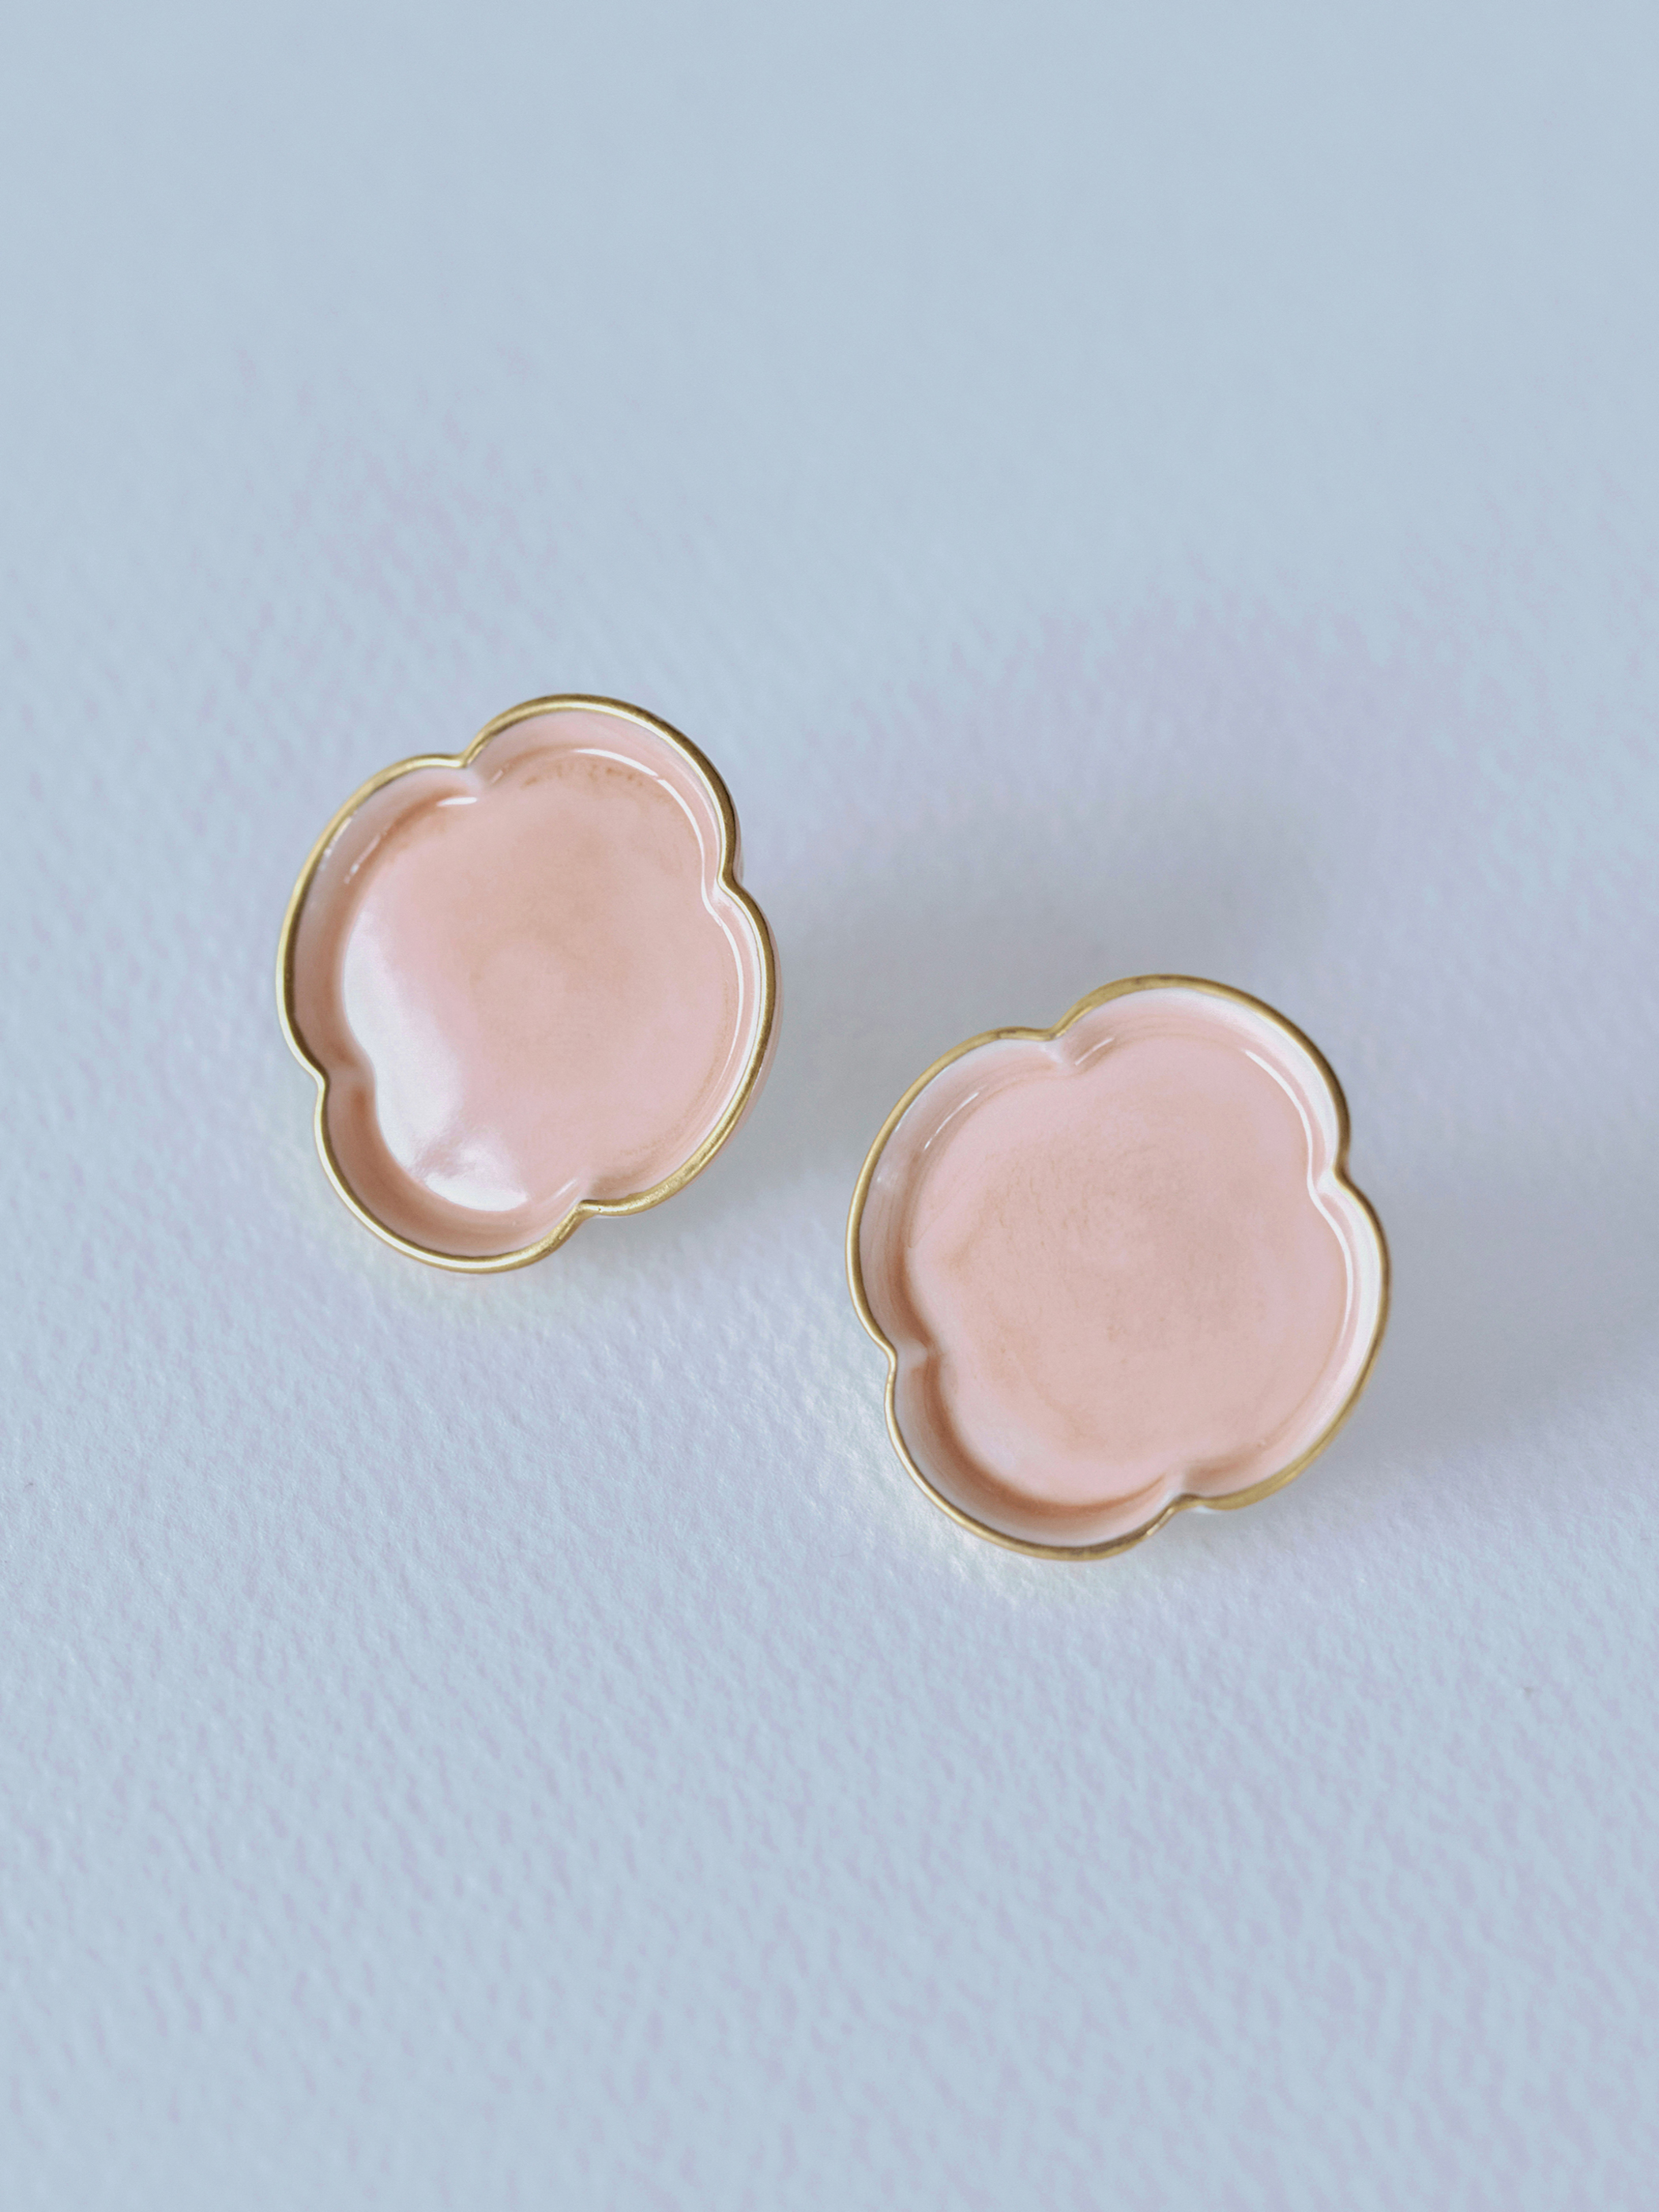 01 木瓜/Mokkou Earrings - Salmon pink